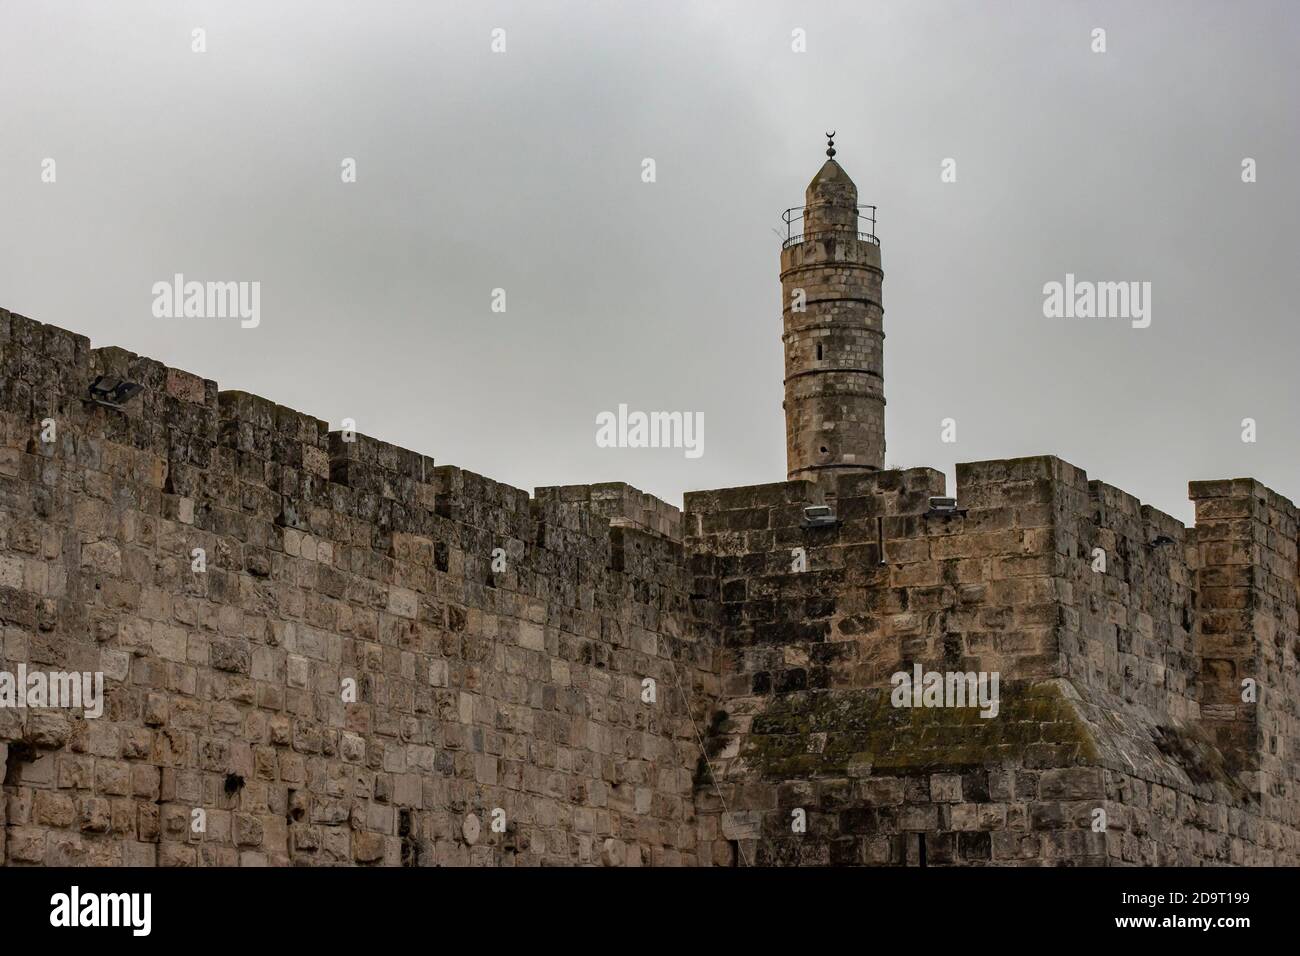 Jerusalén, Israel - 5 de noviembre de 2020: La torre de la ciudadela de David que se eleva sobre las antiguas murallas de la ciudad, en un día de obercast. Foto de stock